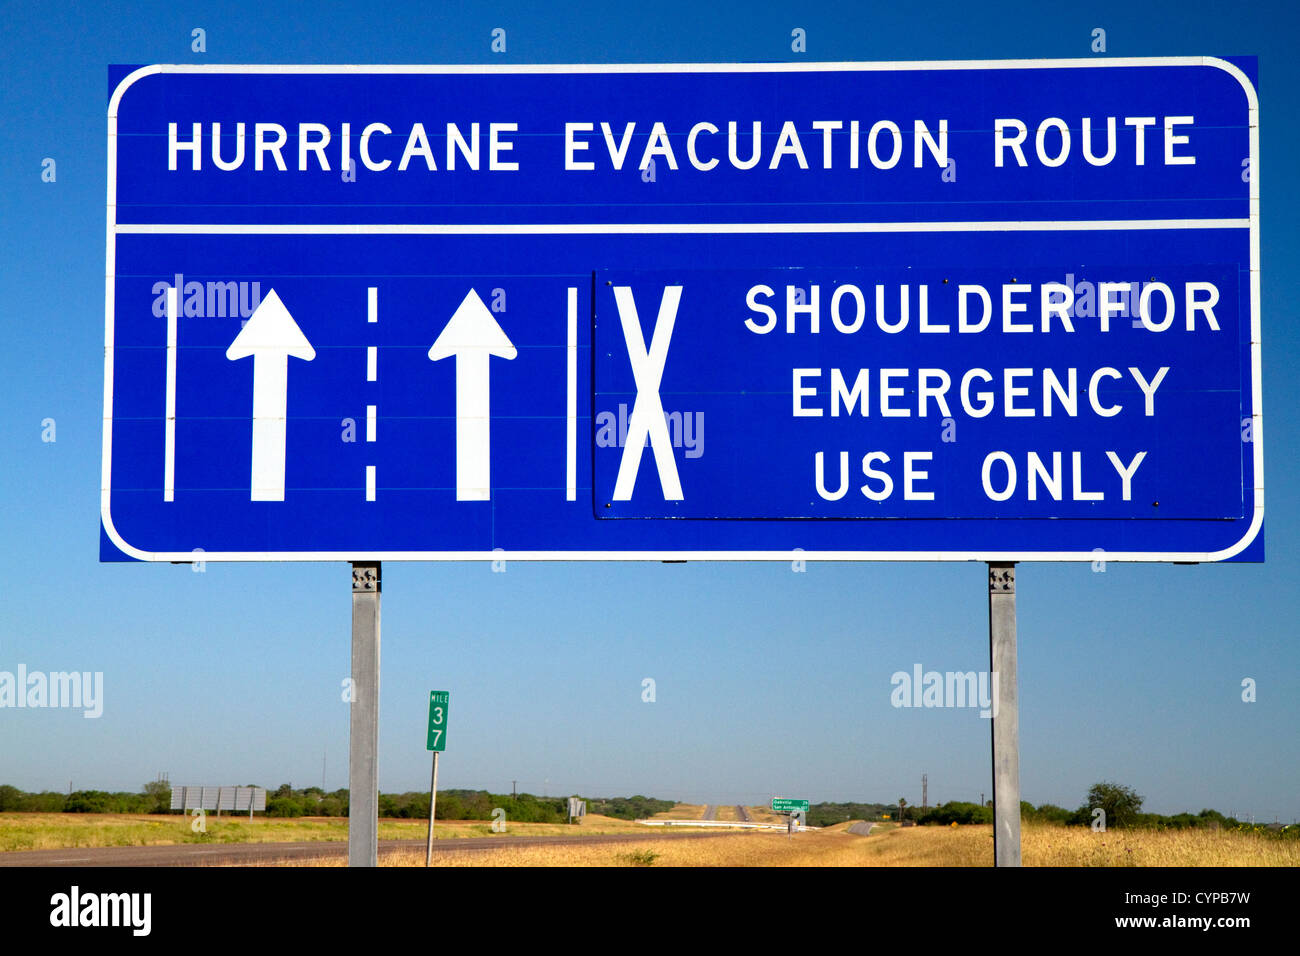 L'ouragan évacuation panneau routier le long de l'Interstate 37 près de Corpus Christi, Texas, États-Unis. Banque D'Images